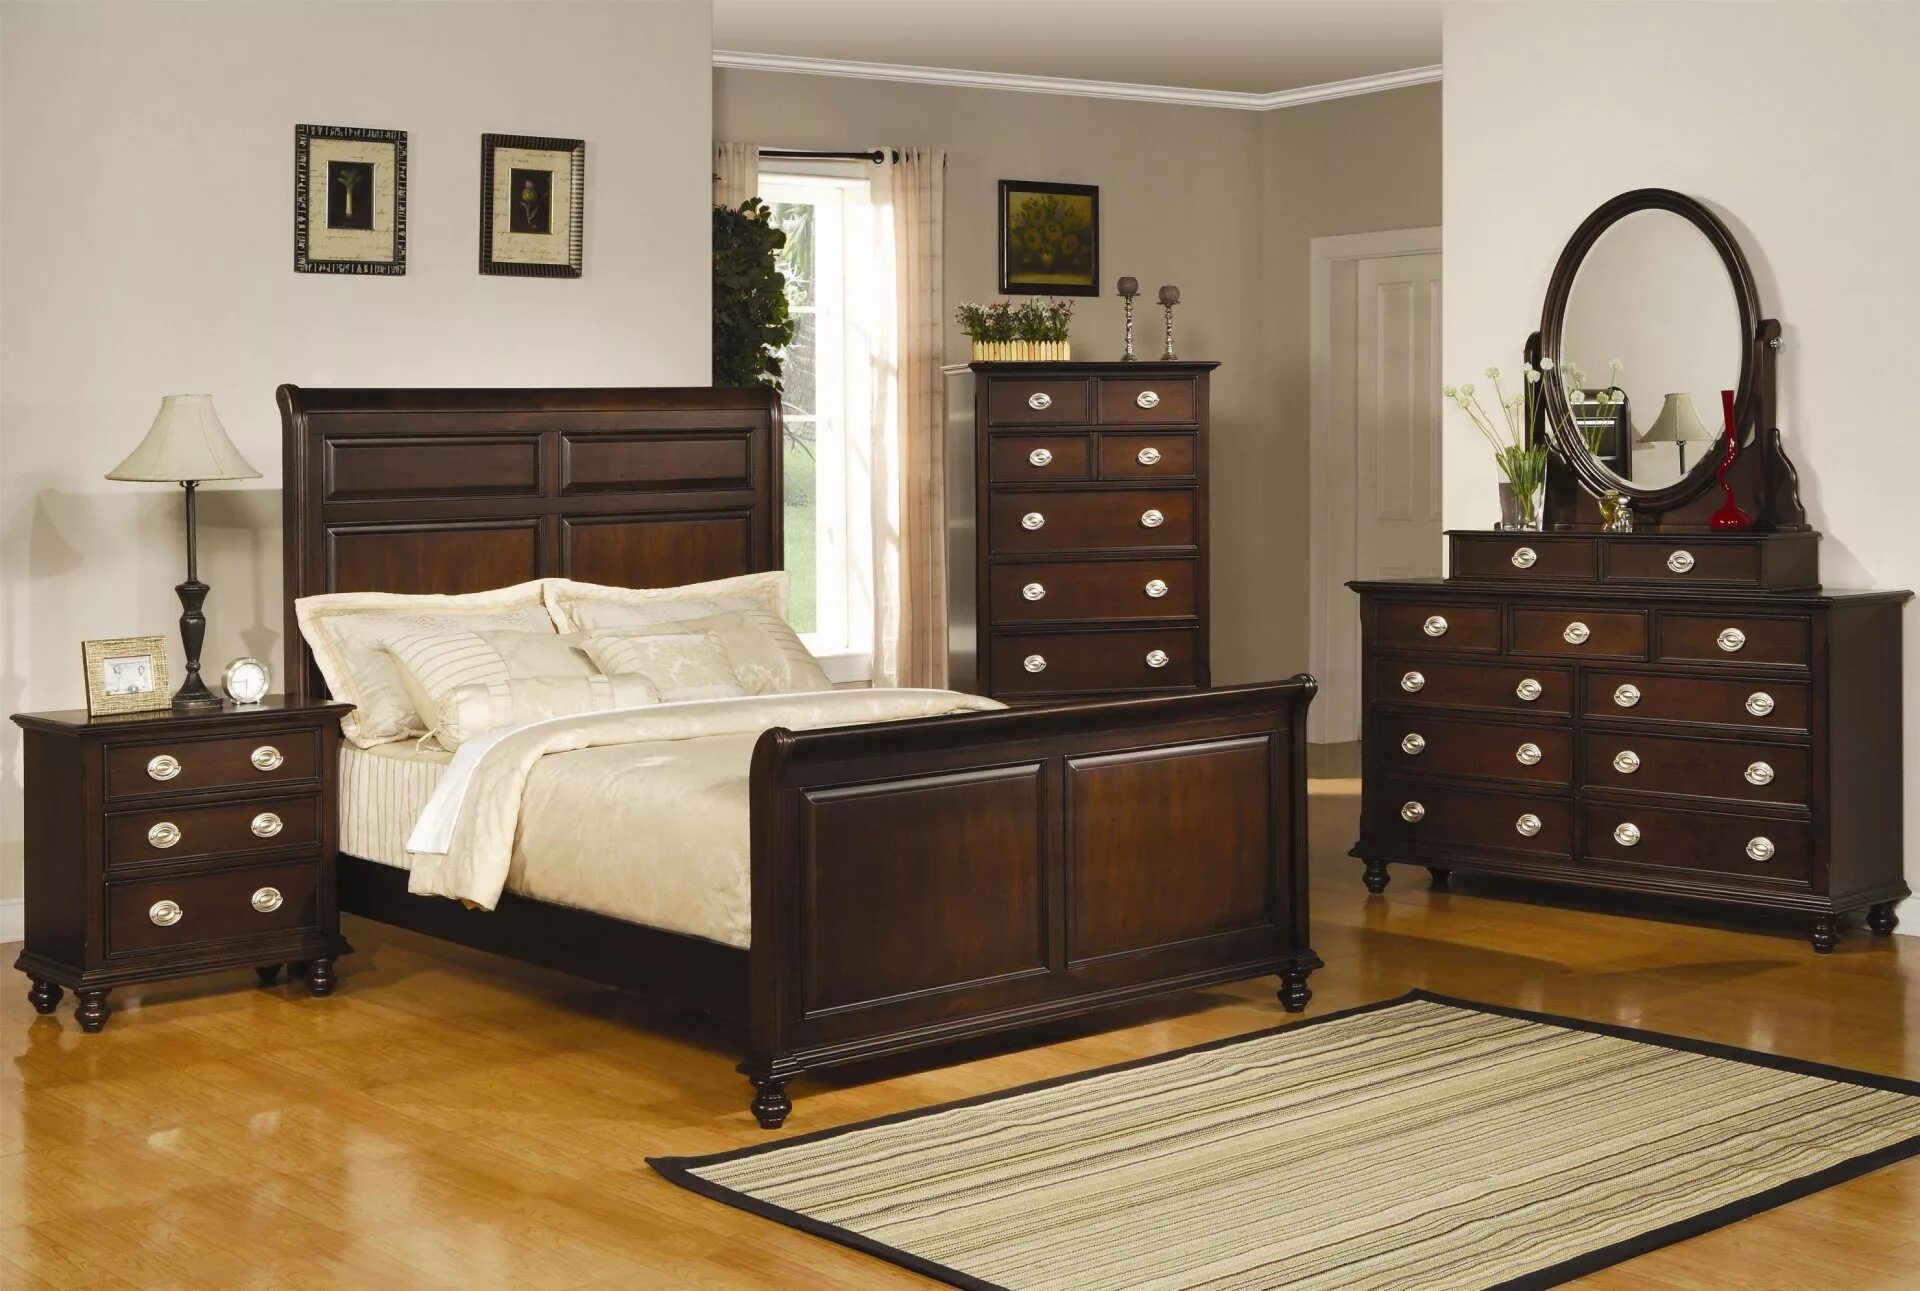 Спальня с темной мебелью. Комната с коричневой мебелью. Спальня с коричневой мебелью. Темная мебель.